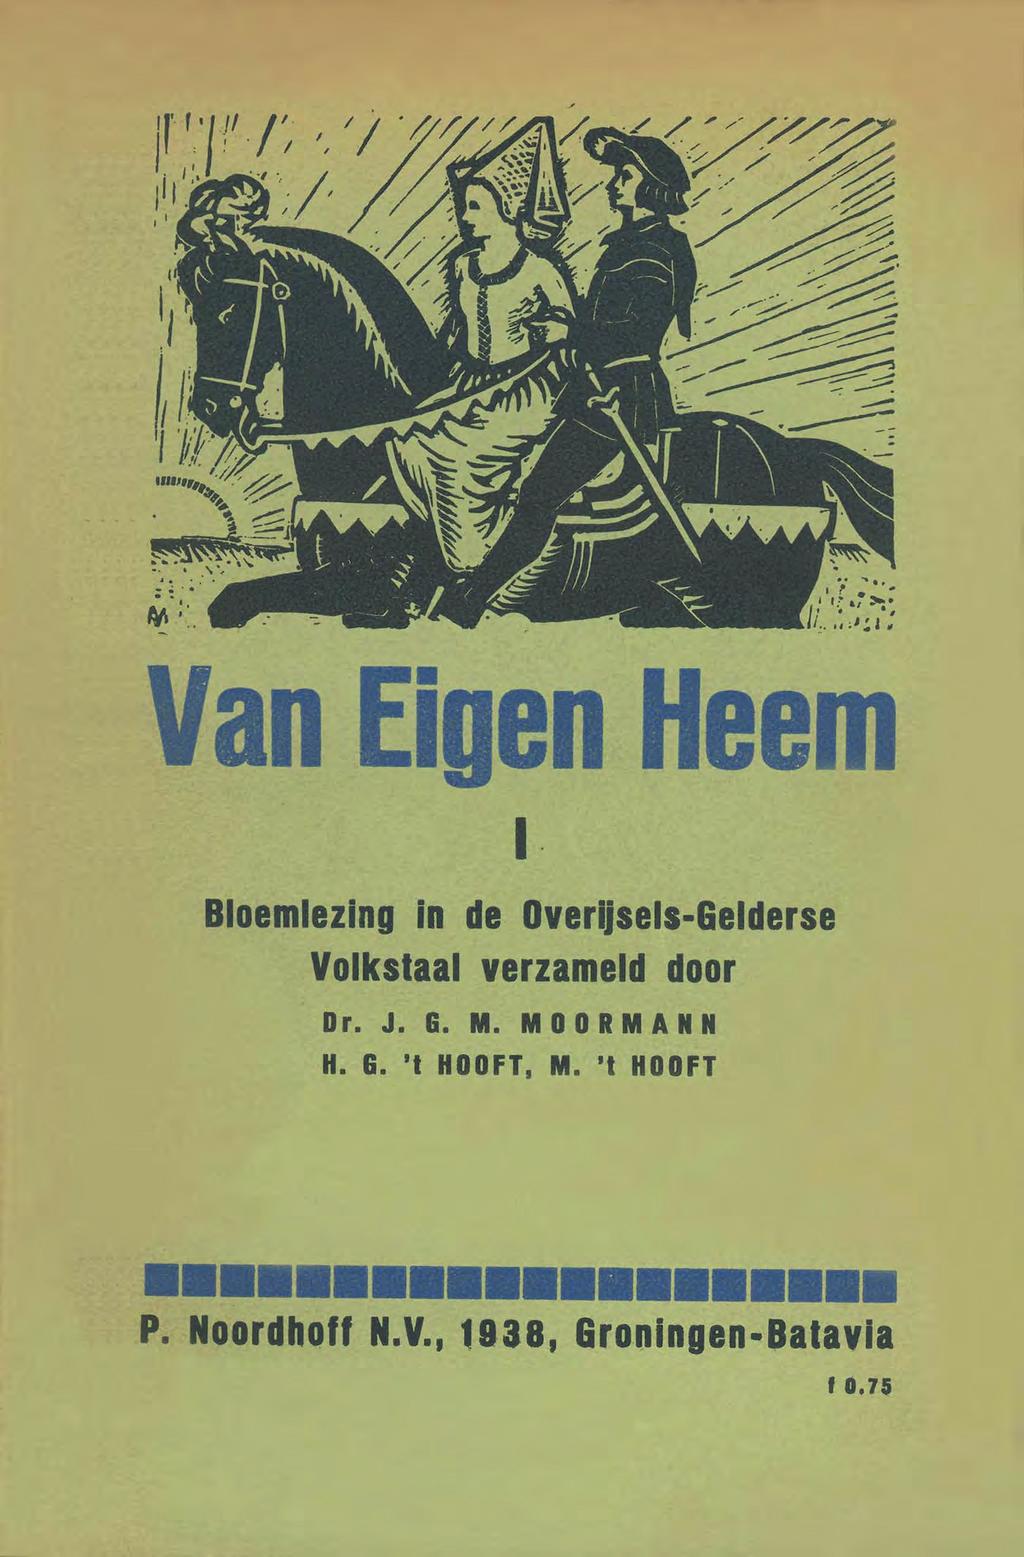 Van Eigen Heel!' Bloemlezing in de Overliseis-Gelderse Volkstaal verzameld door Or. J. G. M. MOORMANN H.HOOFT, G. HOOFT, M.